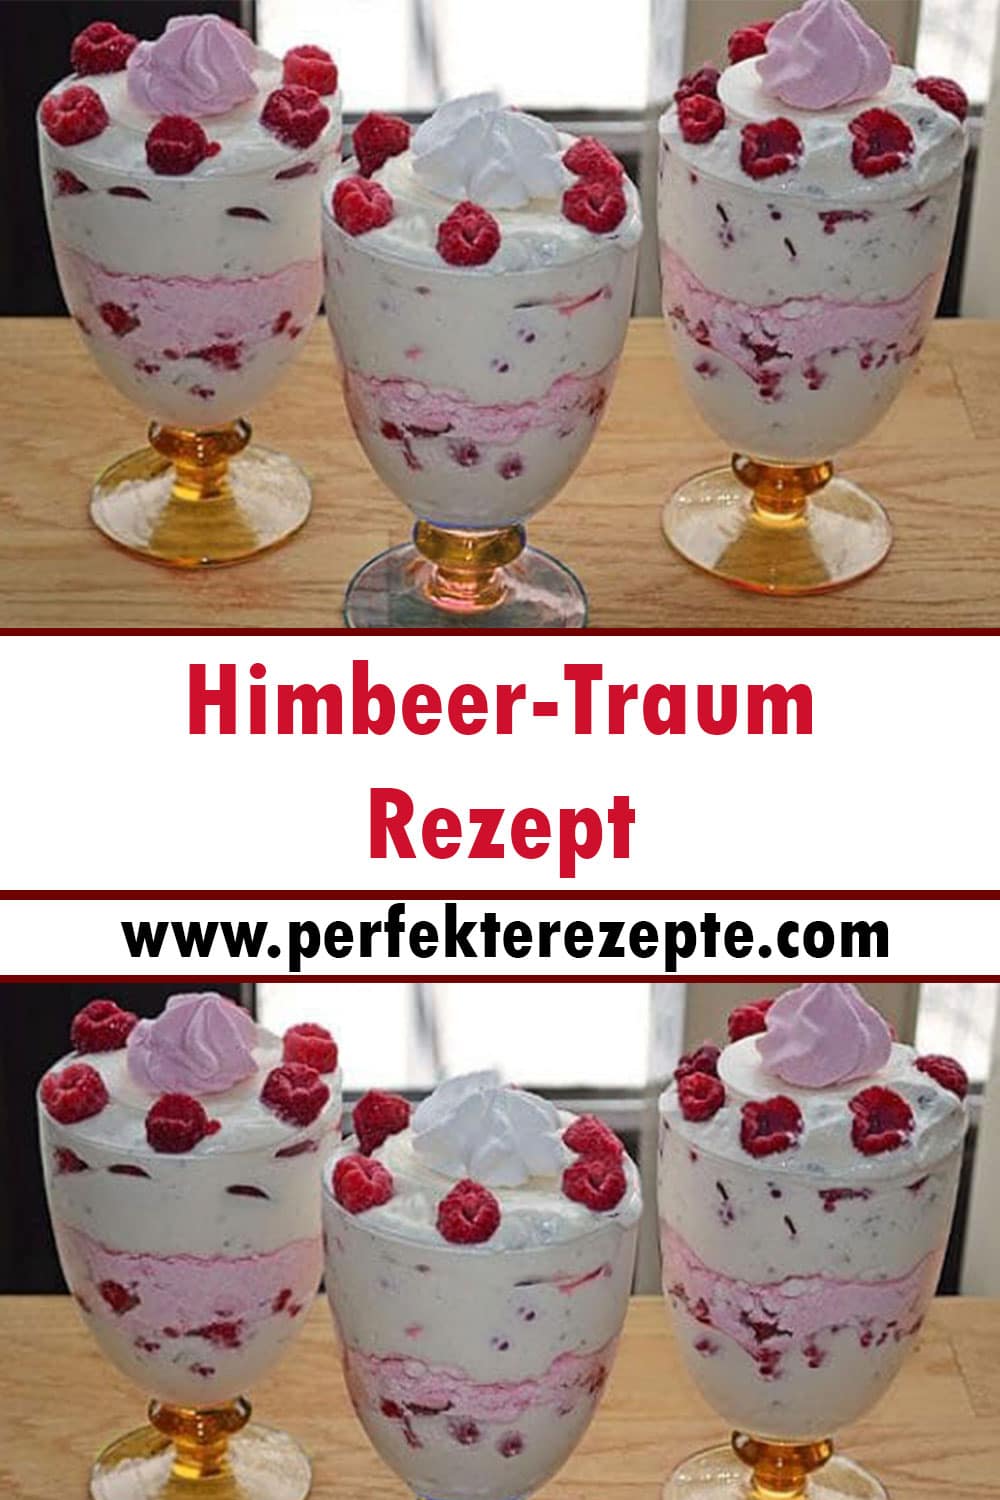 Himbeer-Traum Rezept